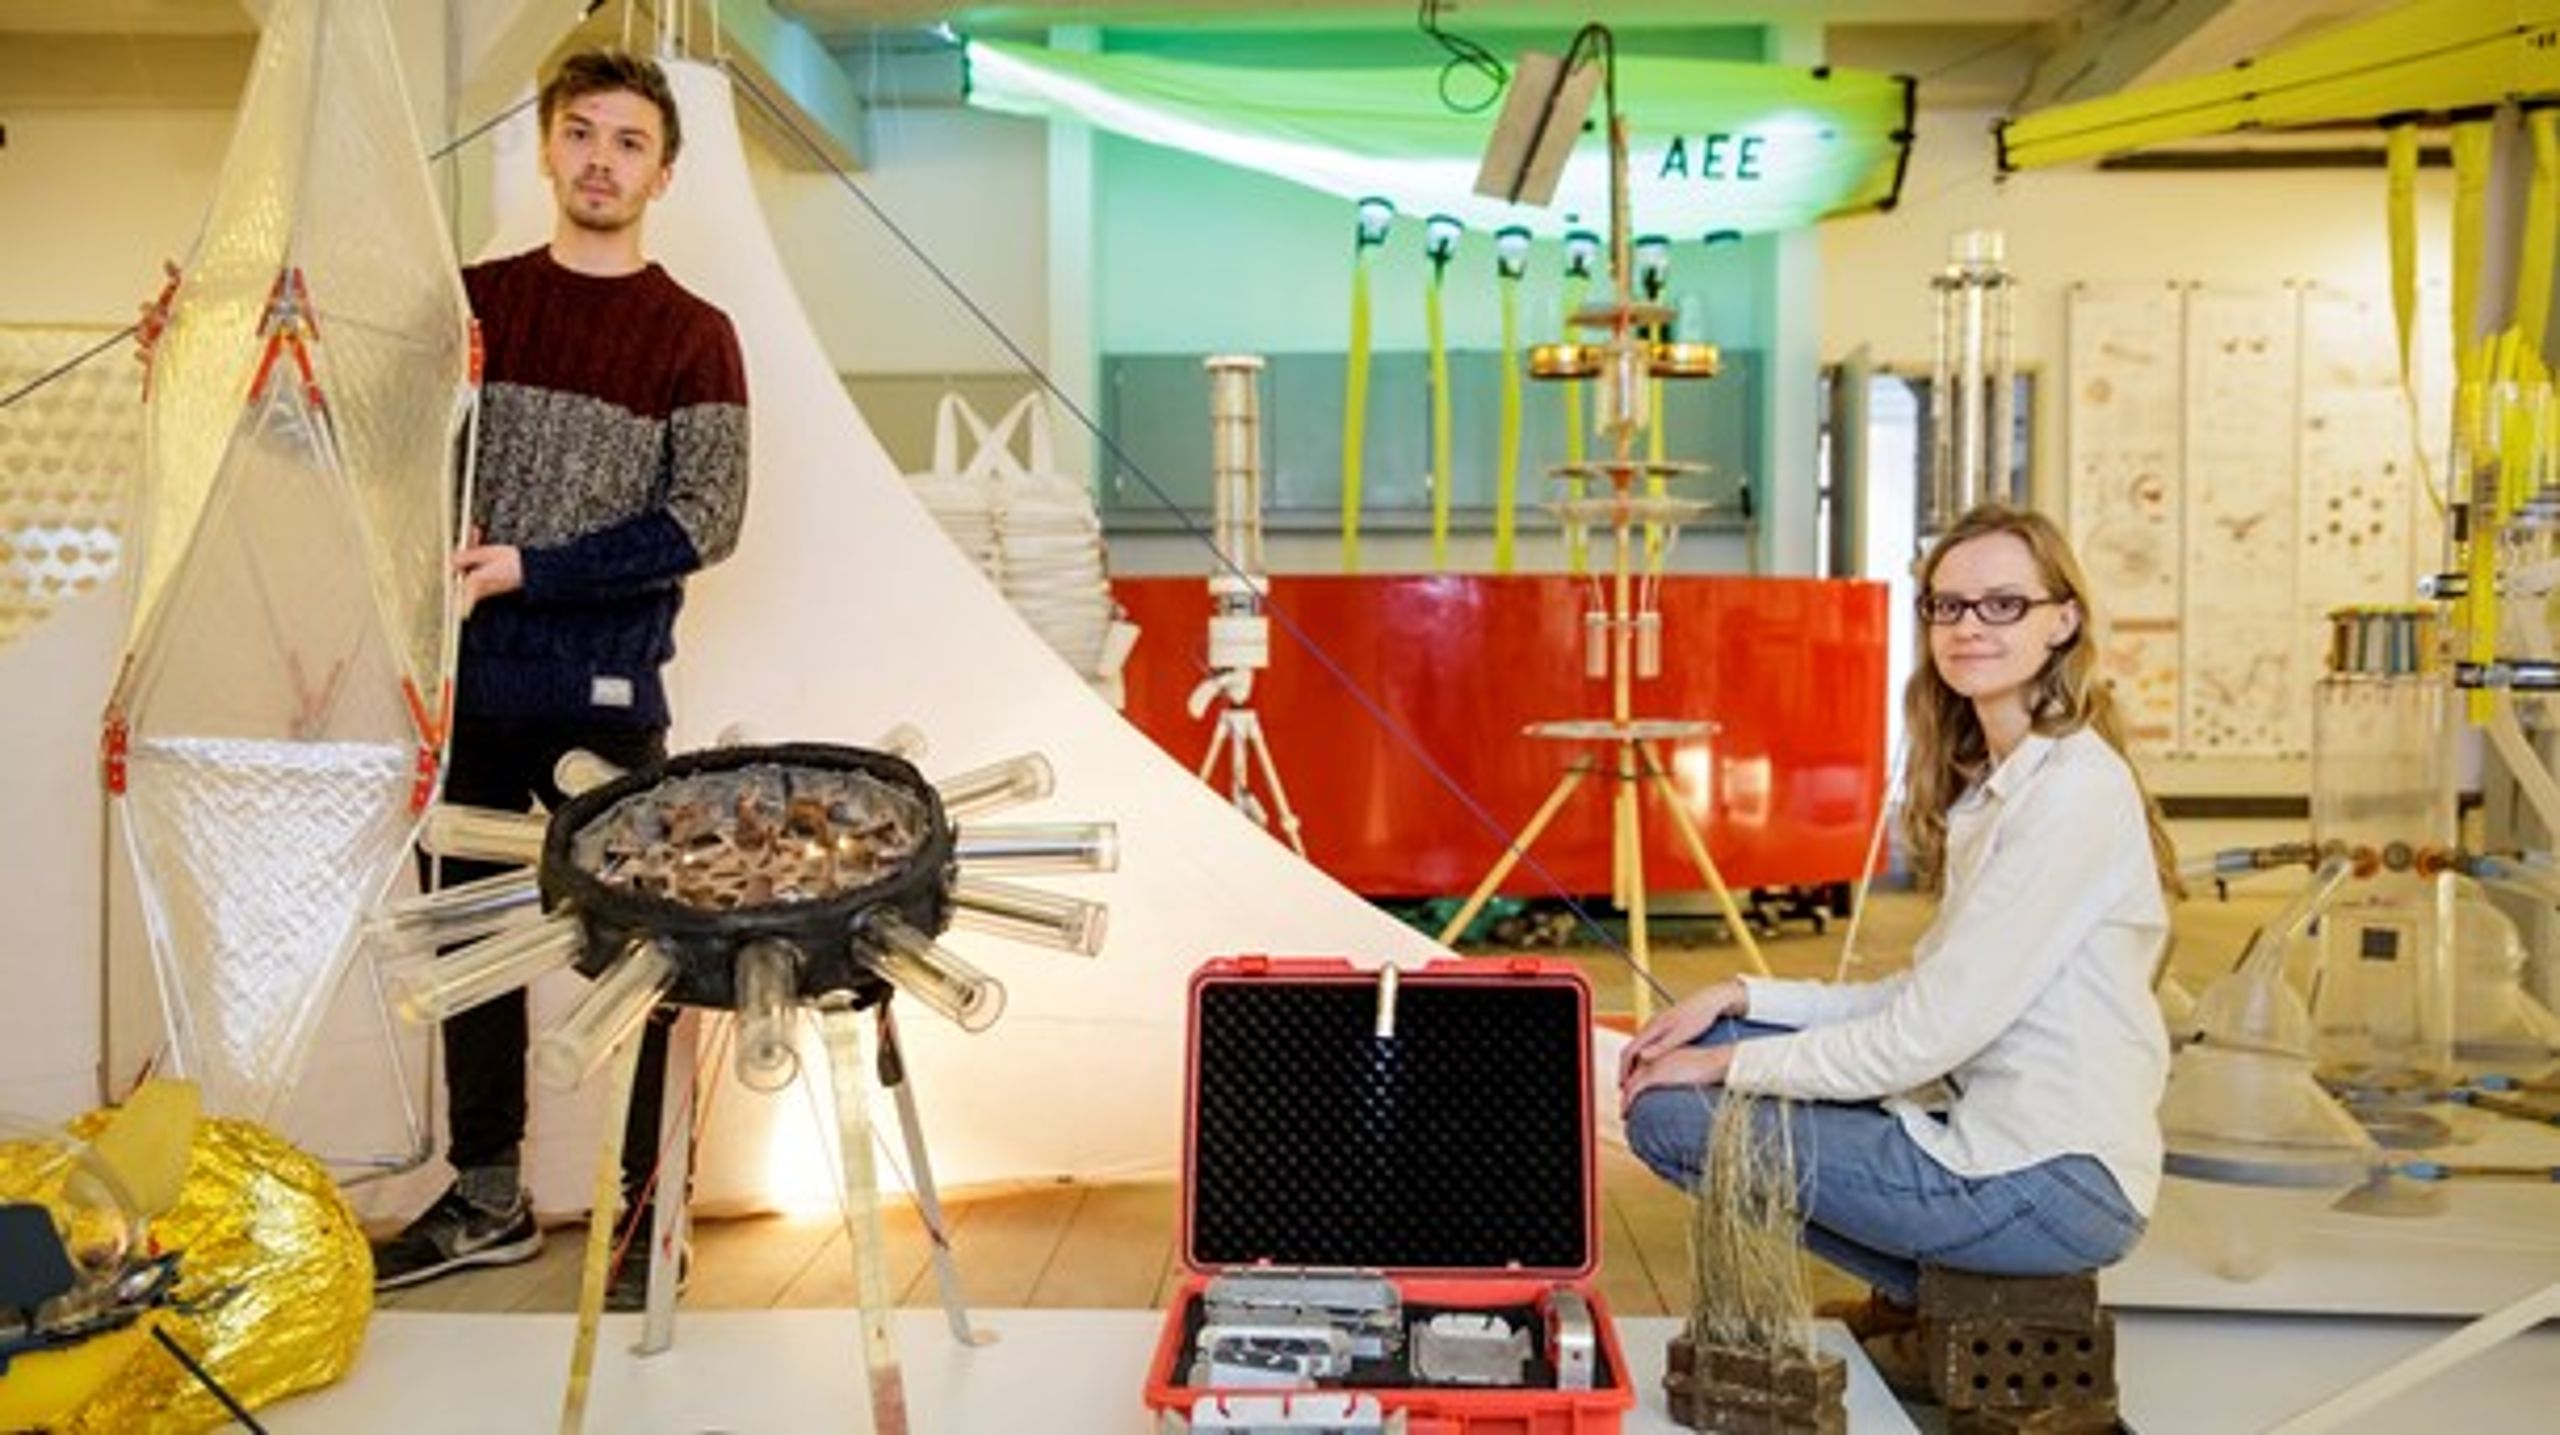 Grøn innovation kommer ofte fra unge iværksættere, mener Christian Poll (Å). Her viser studerende fra arkitekt- og designskolerne i København eksempler på bæredygtige produkter.